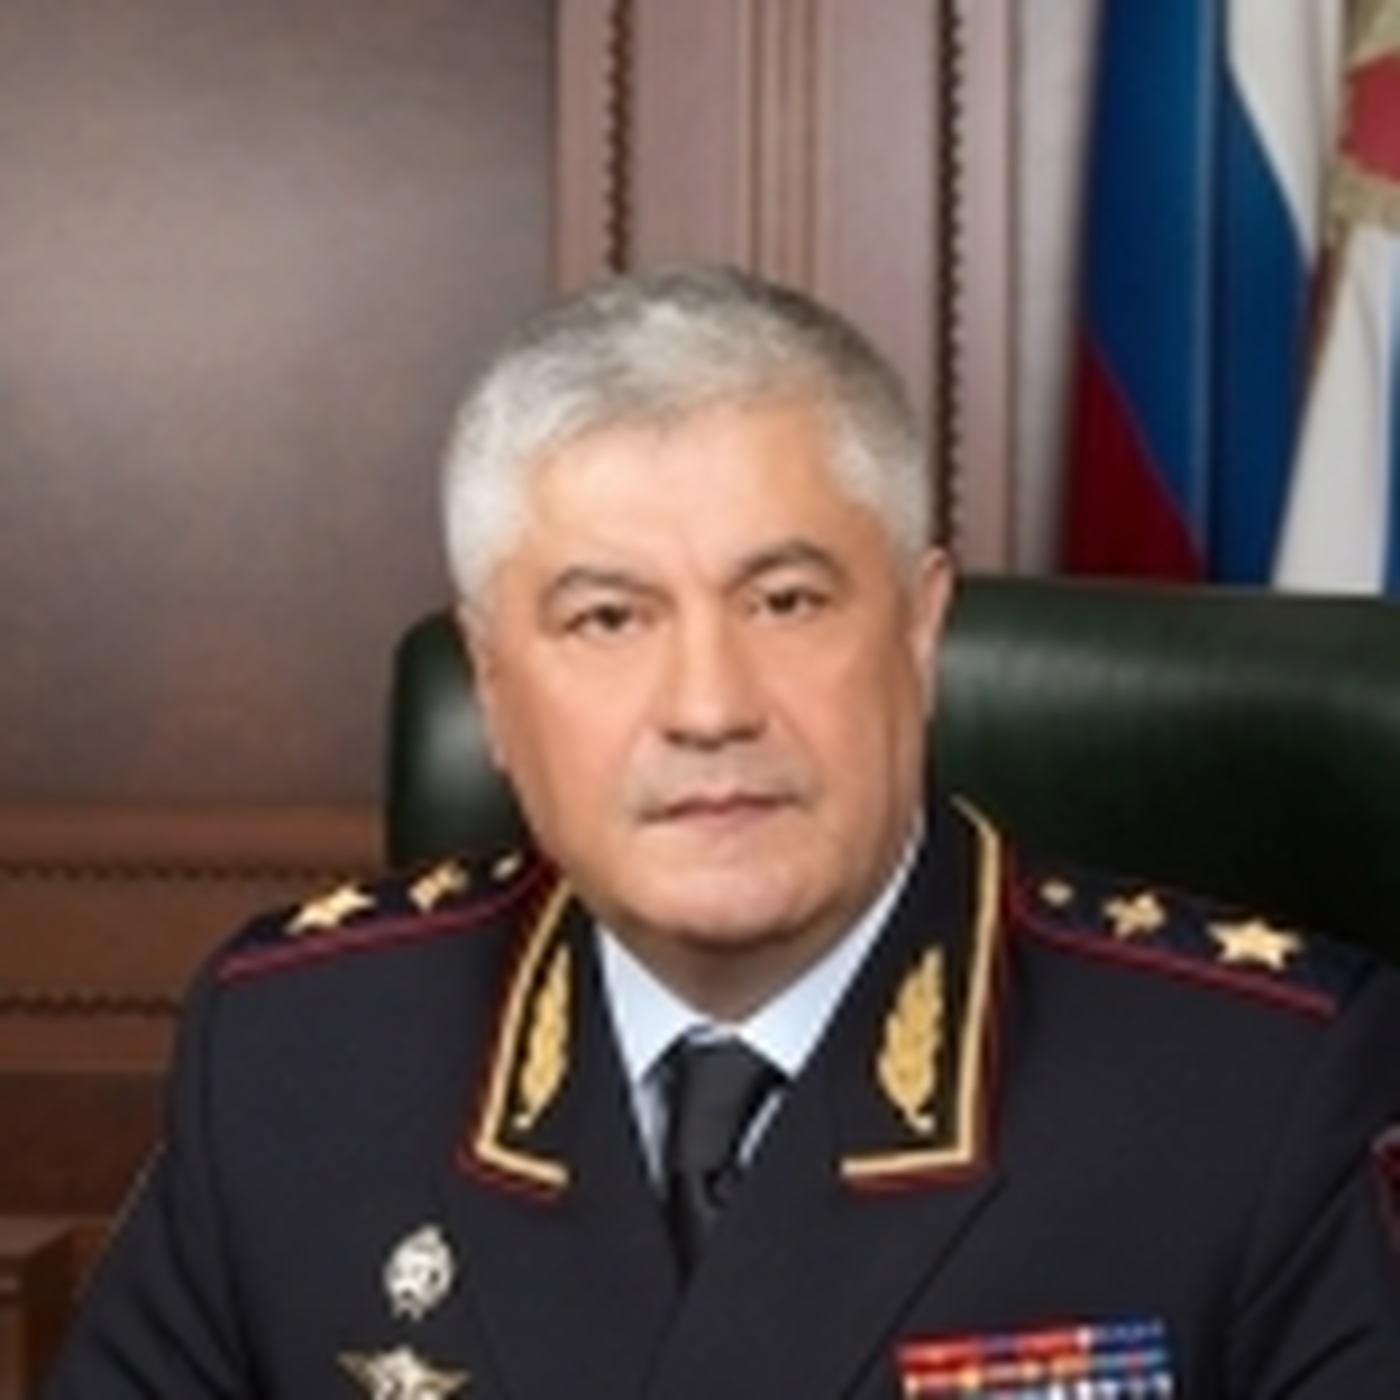 министр внутренних дел российской федерации